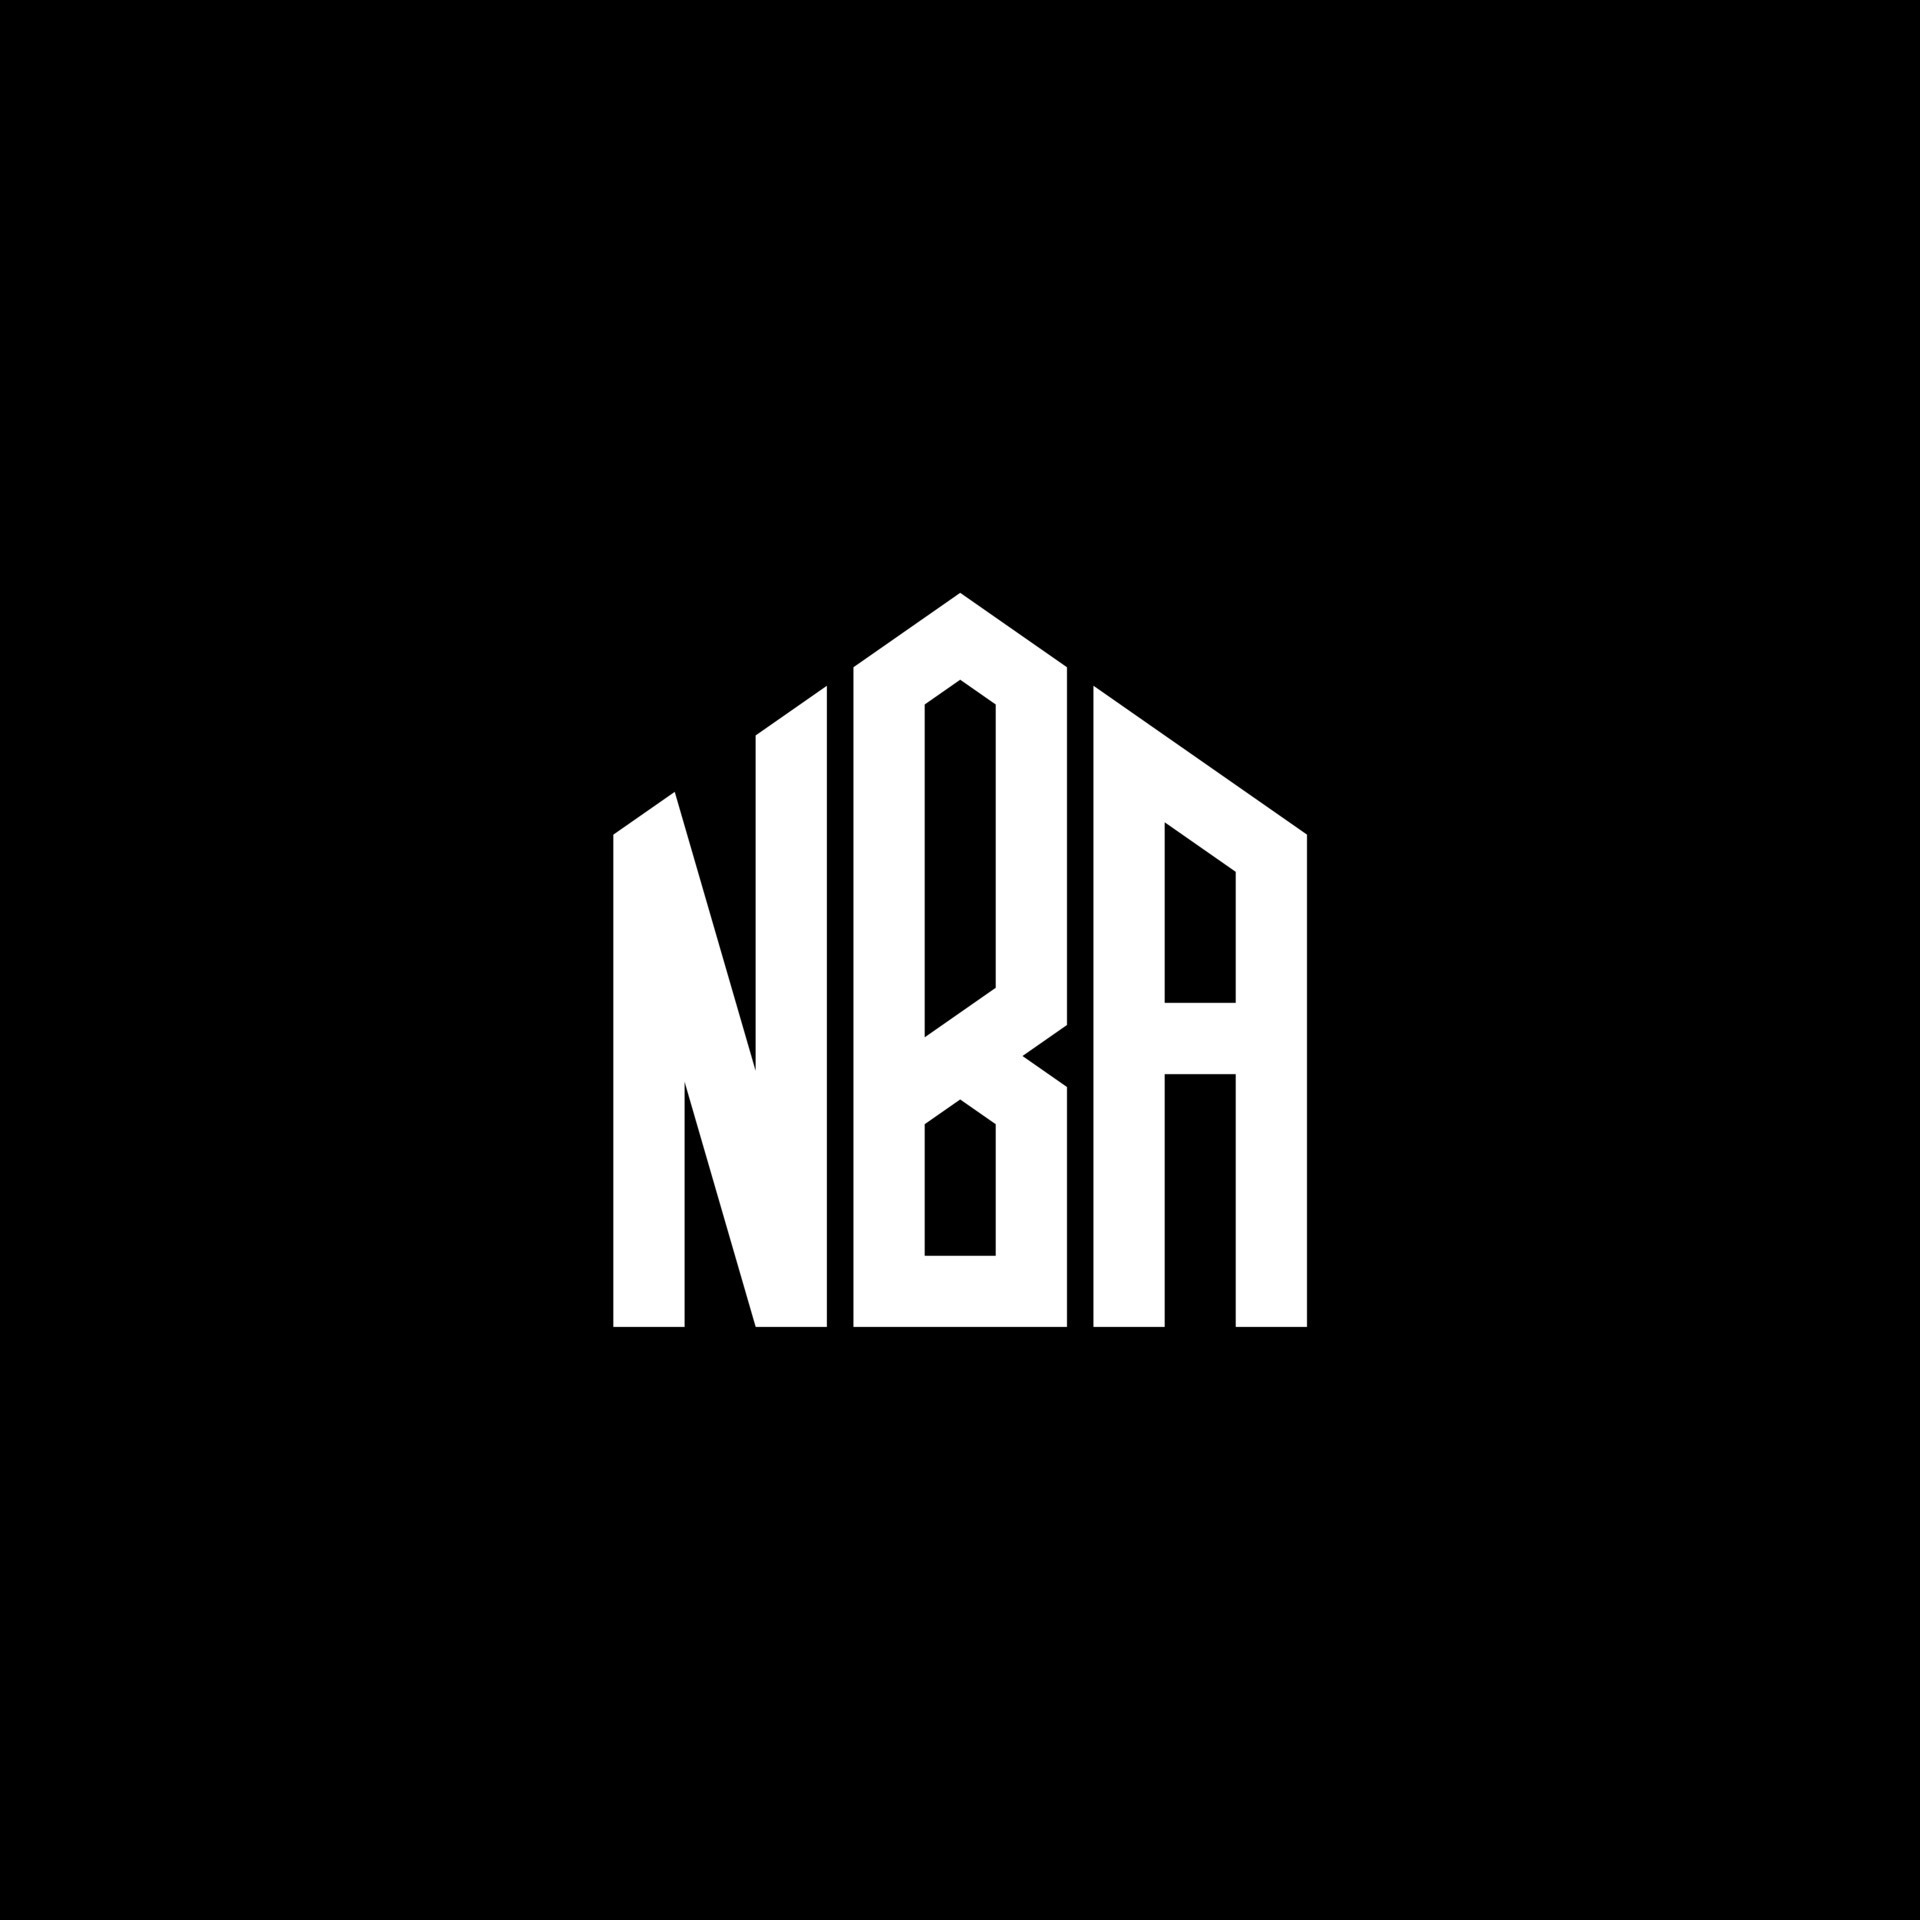 Khám phá hình ảnh NBA logo trên nền đen, đồng hành cùng những chiếc giày đỉnh cao, giúp các siêu sao của NBA thể hiện tối đa khả năng của họ trên sân. Bạn không thể bỏ qua những cảm xúc và niềm đam mê đích thực mà chỉ có NBA mang lại.